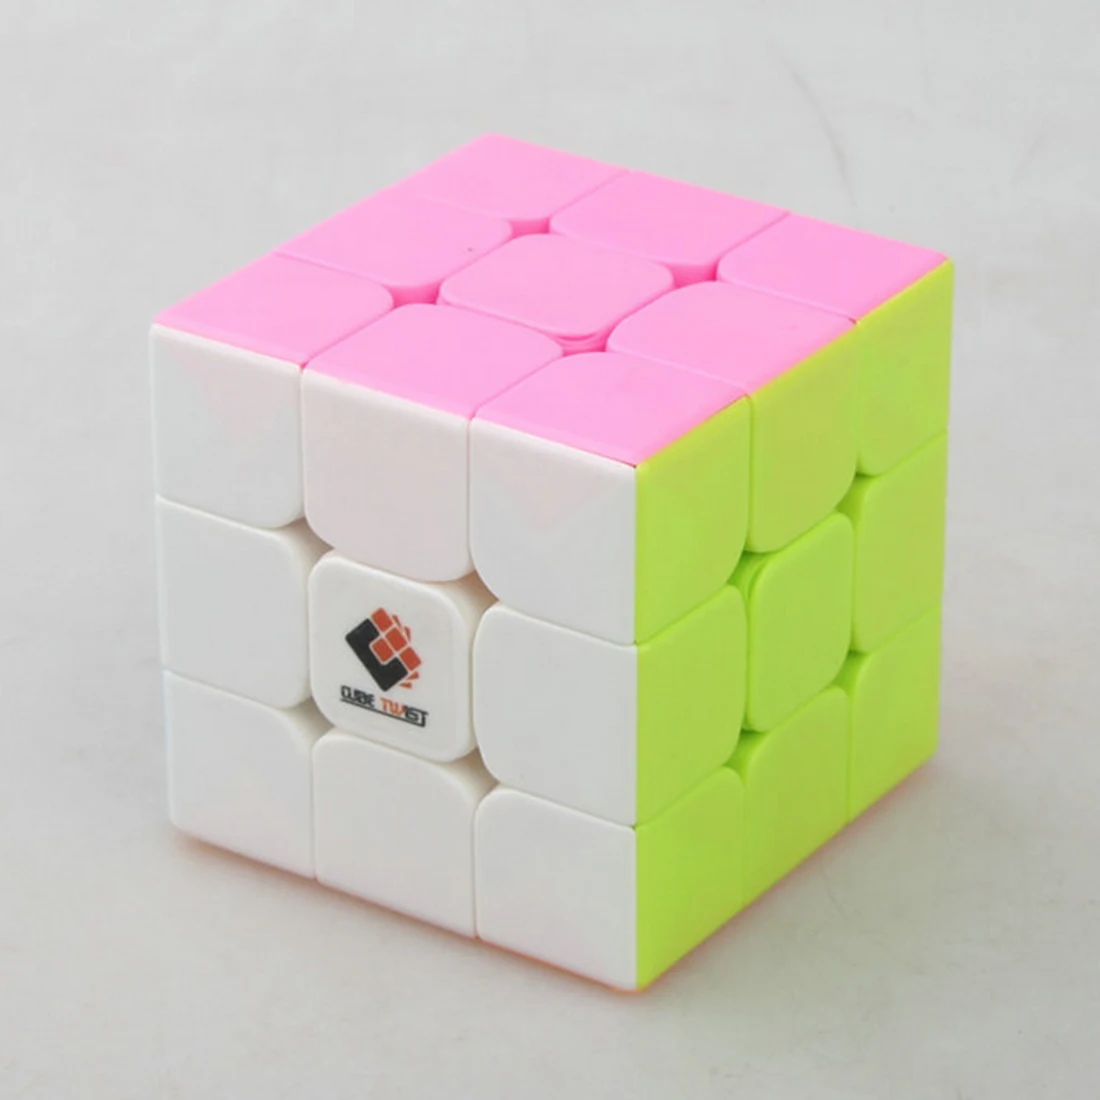 Cube Twist Heibao Профессиональный дизайн 3x3 волшебный куб пазл игрушки для сложных-красочные